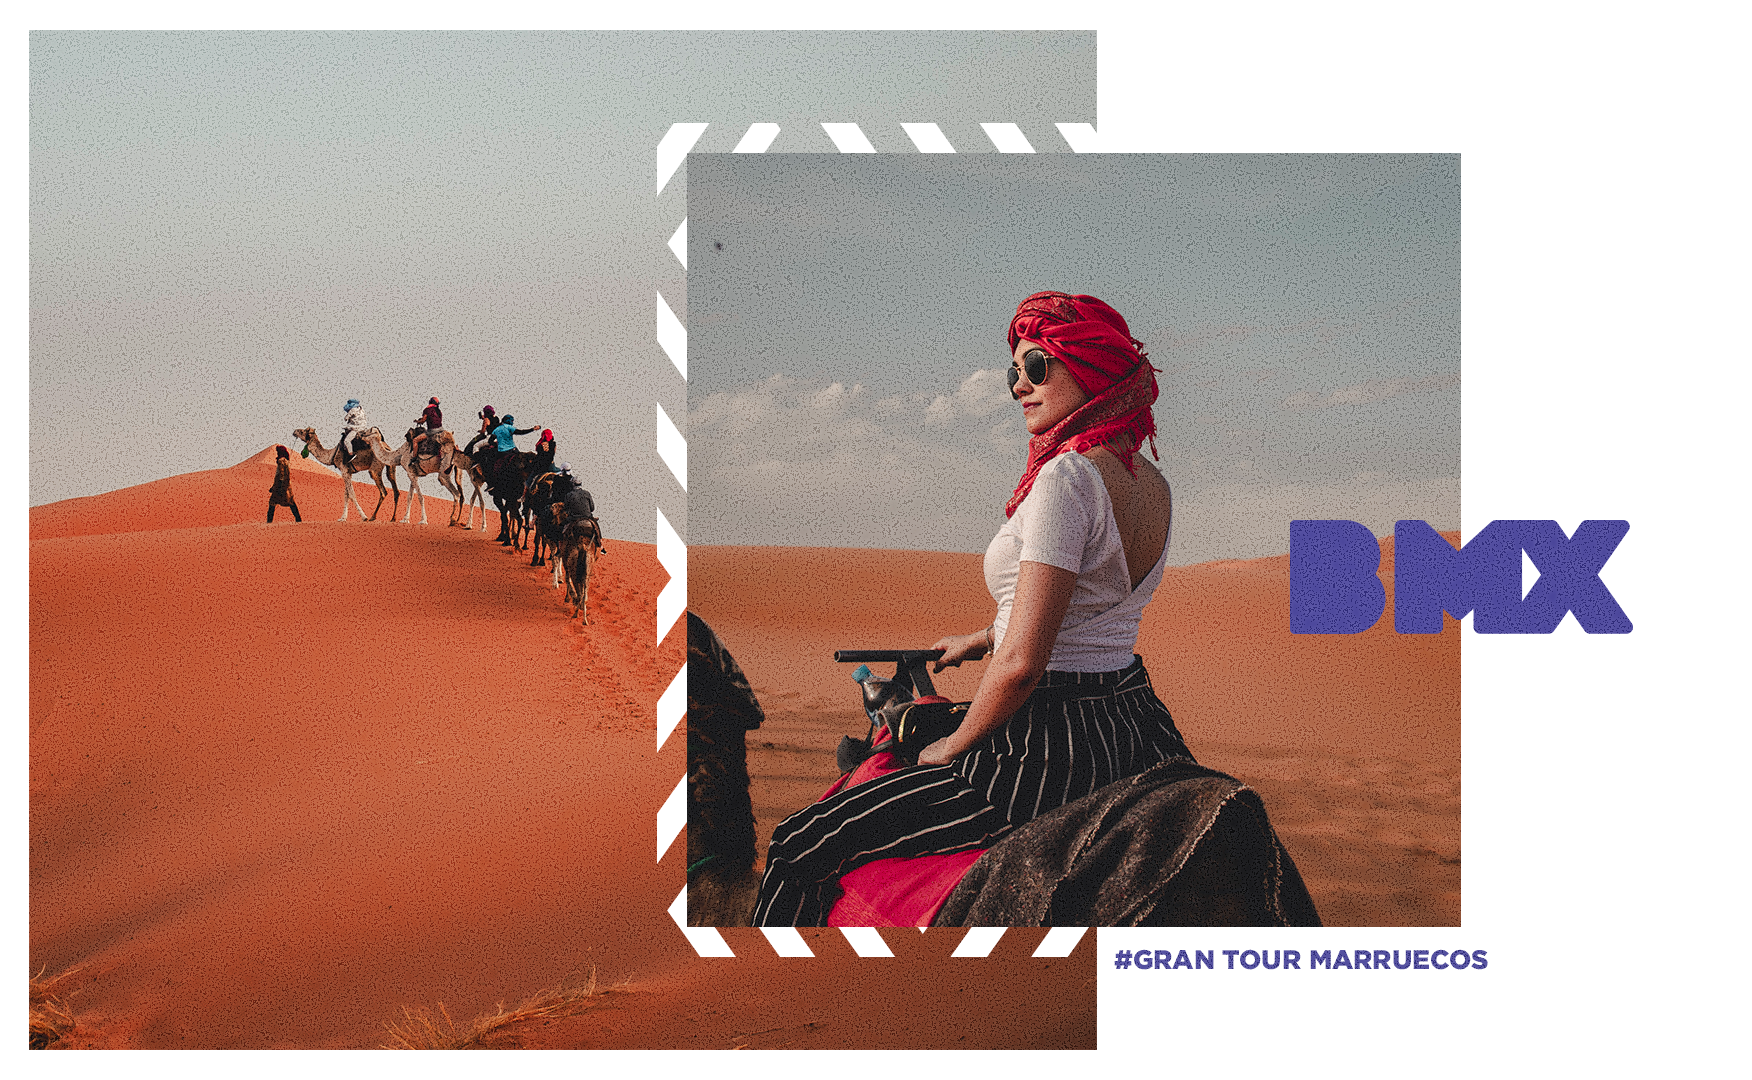 GRAN TOUR MARRUECOS 9 días en el desierto